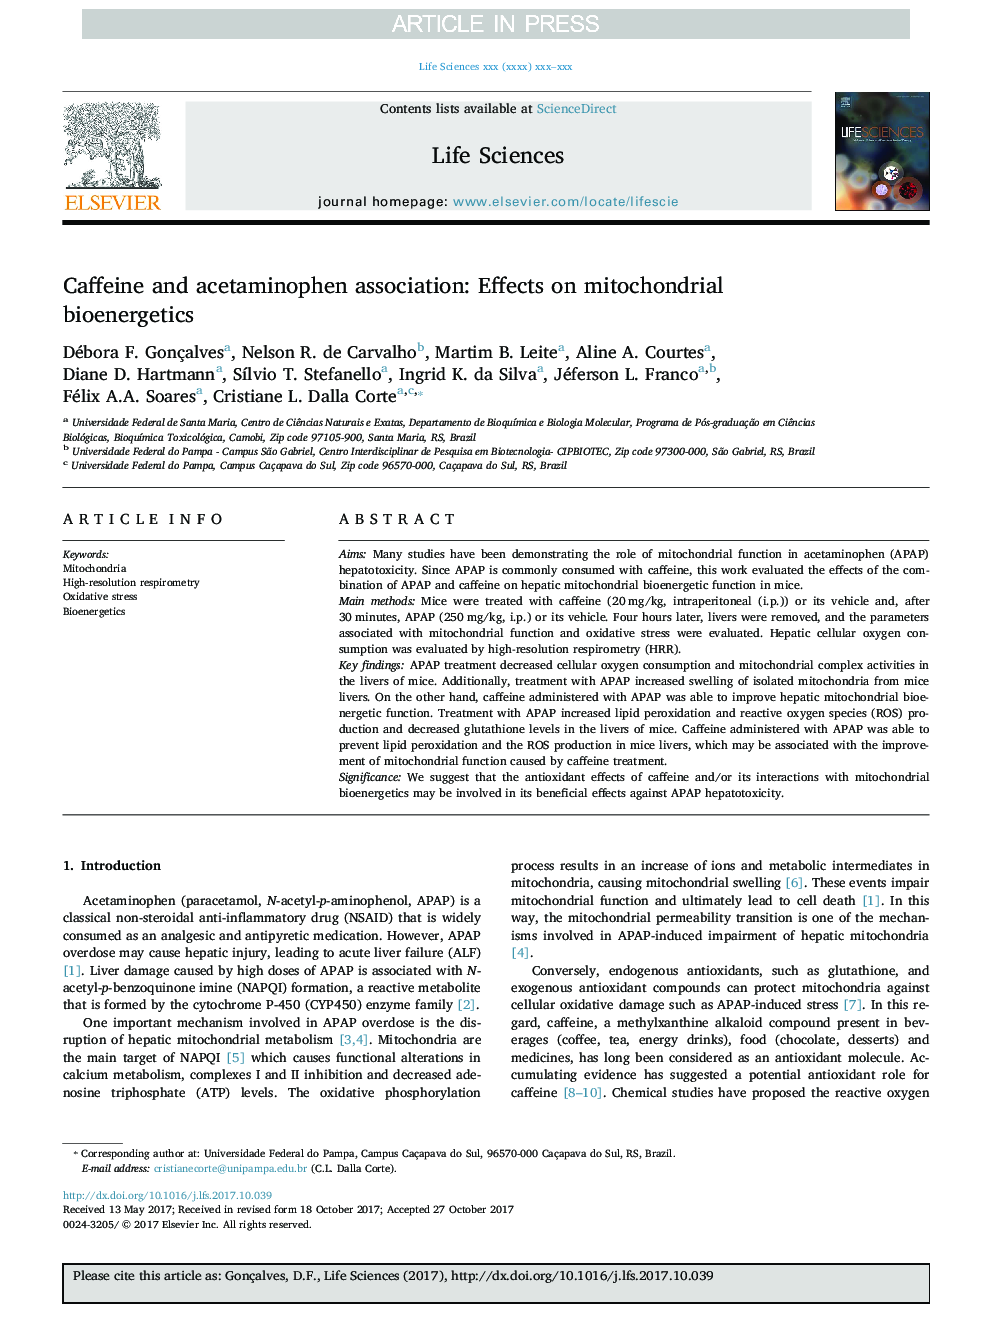 ترکیب کافئین و استامینوفن: اثرات بر روی بیوتروژئیک میتوکندری 